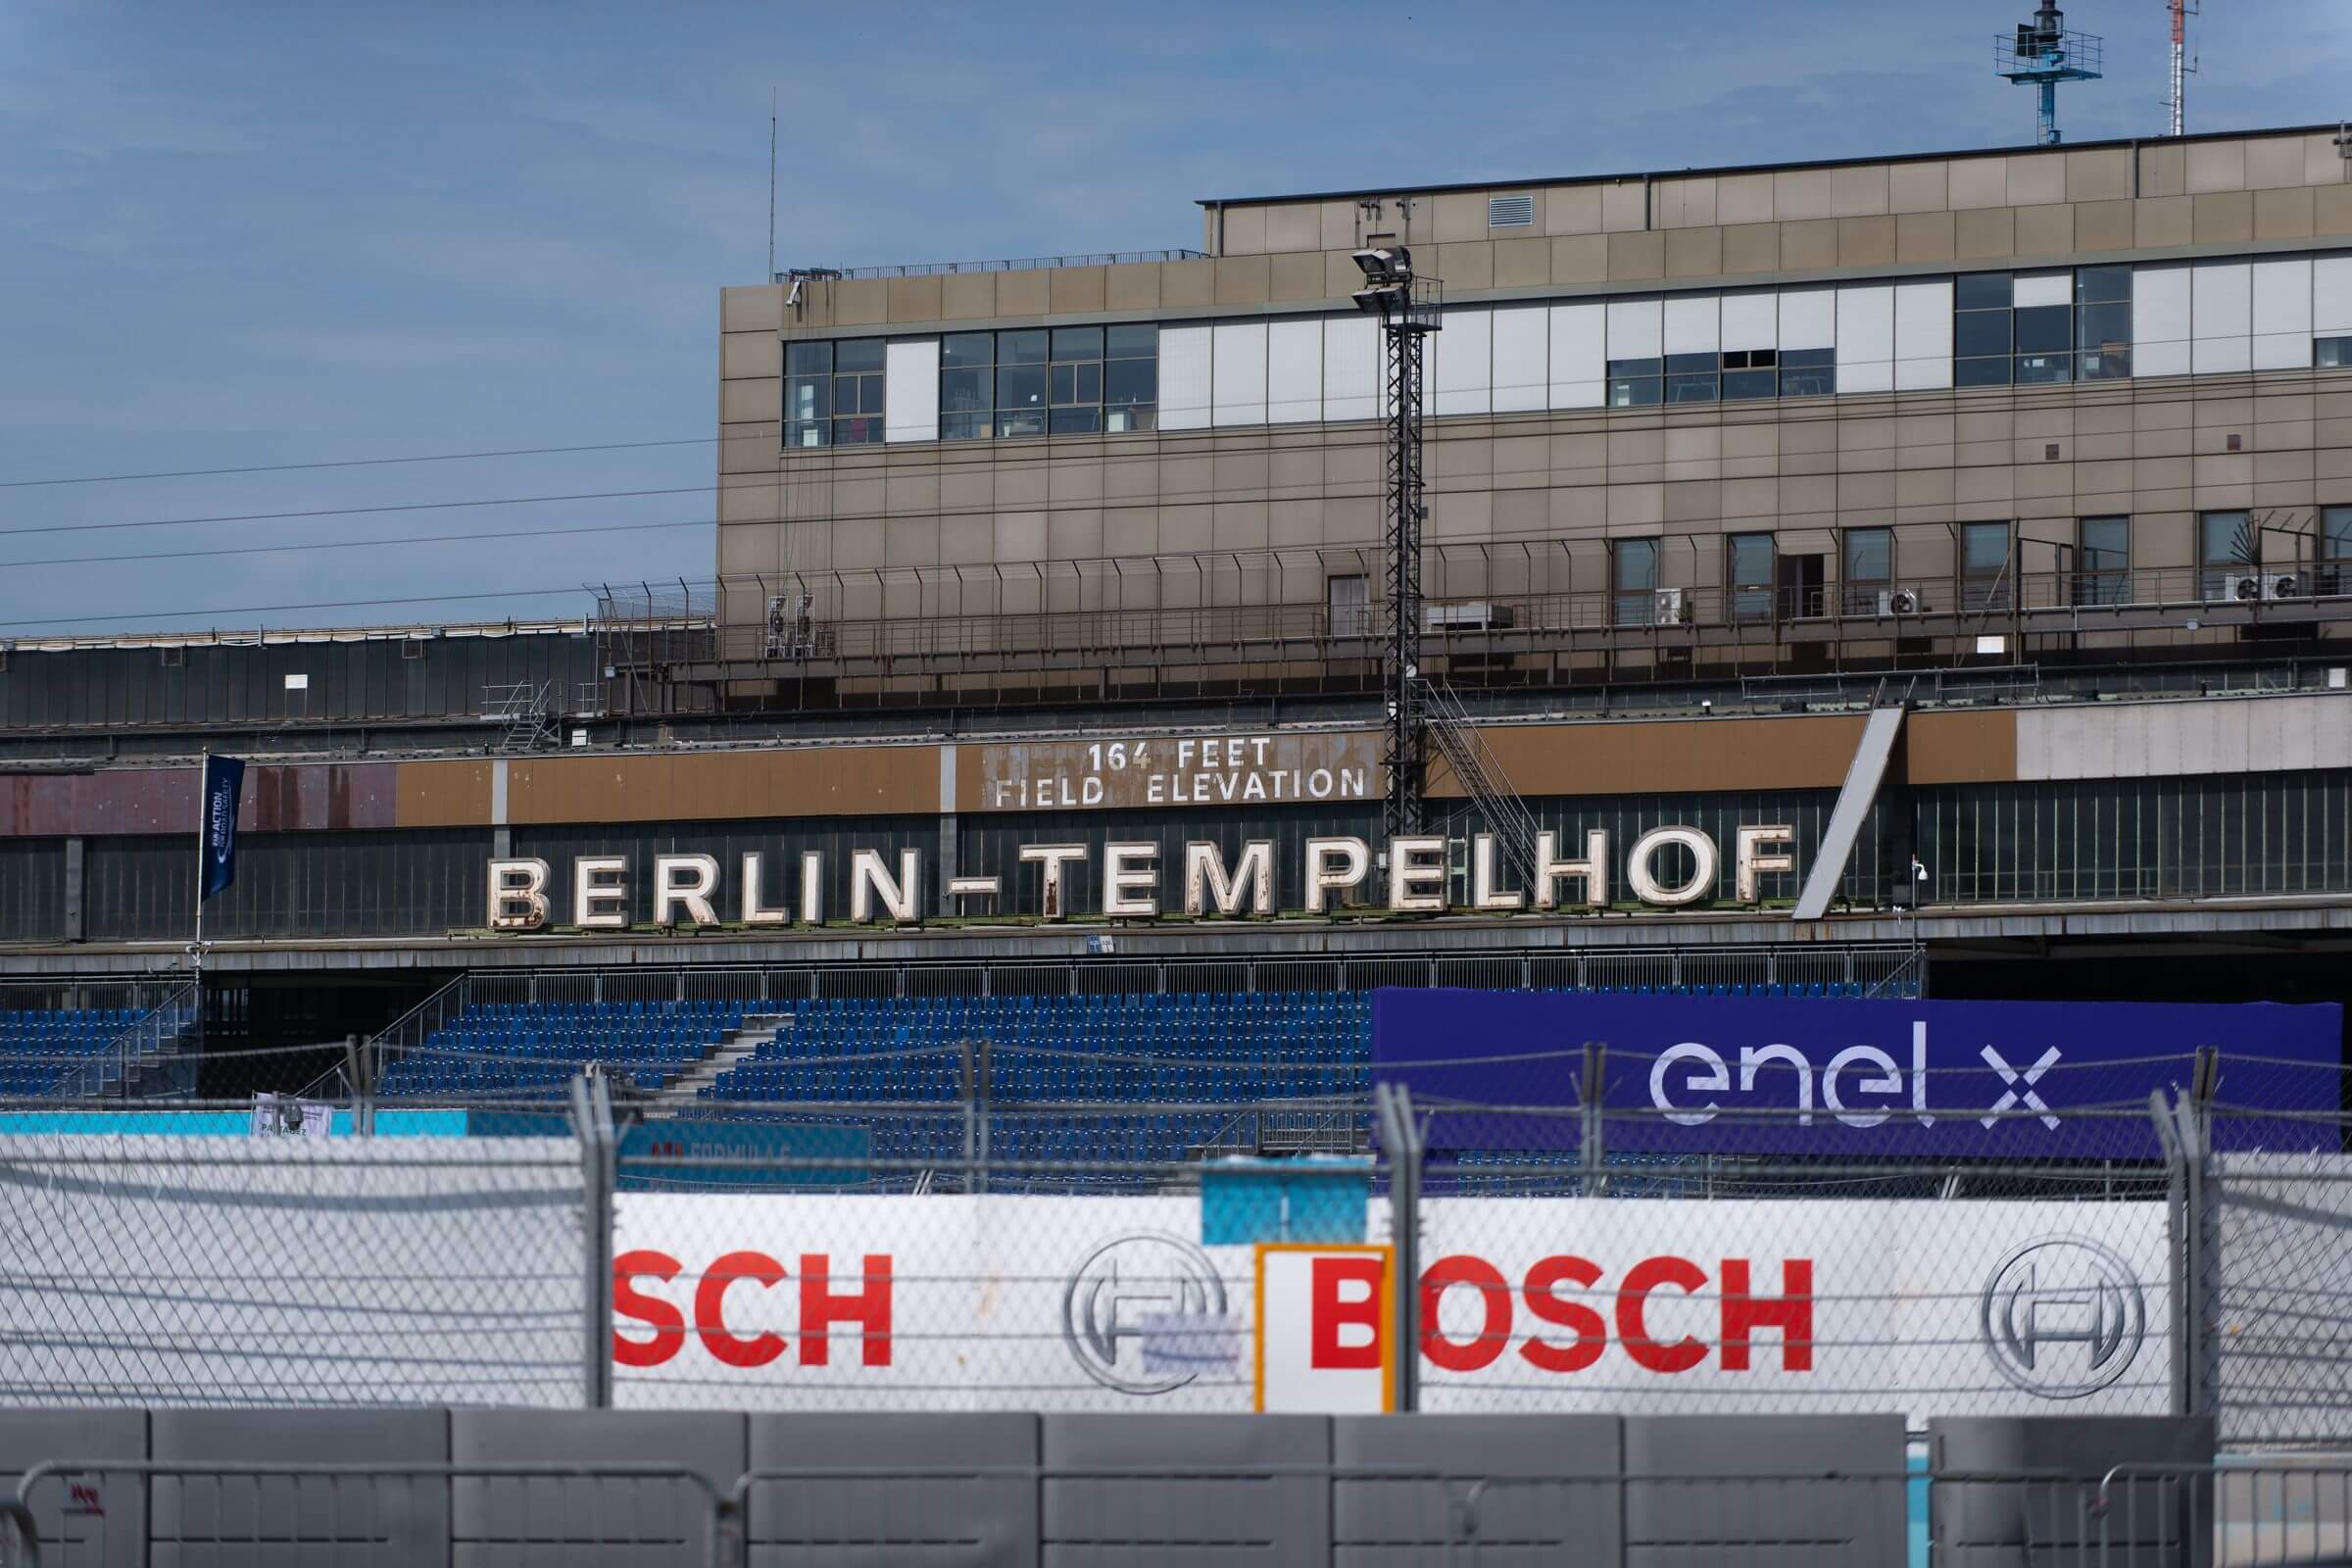 Programm, Anreise, Informationen: Alles, was du zu den Formel-E-Rennen 2022 in Berlin wissen musst